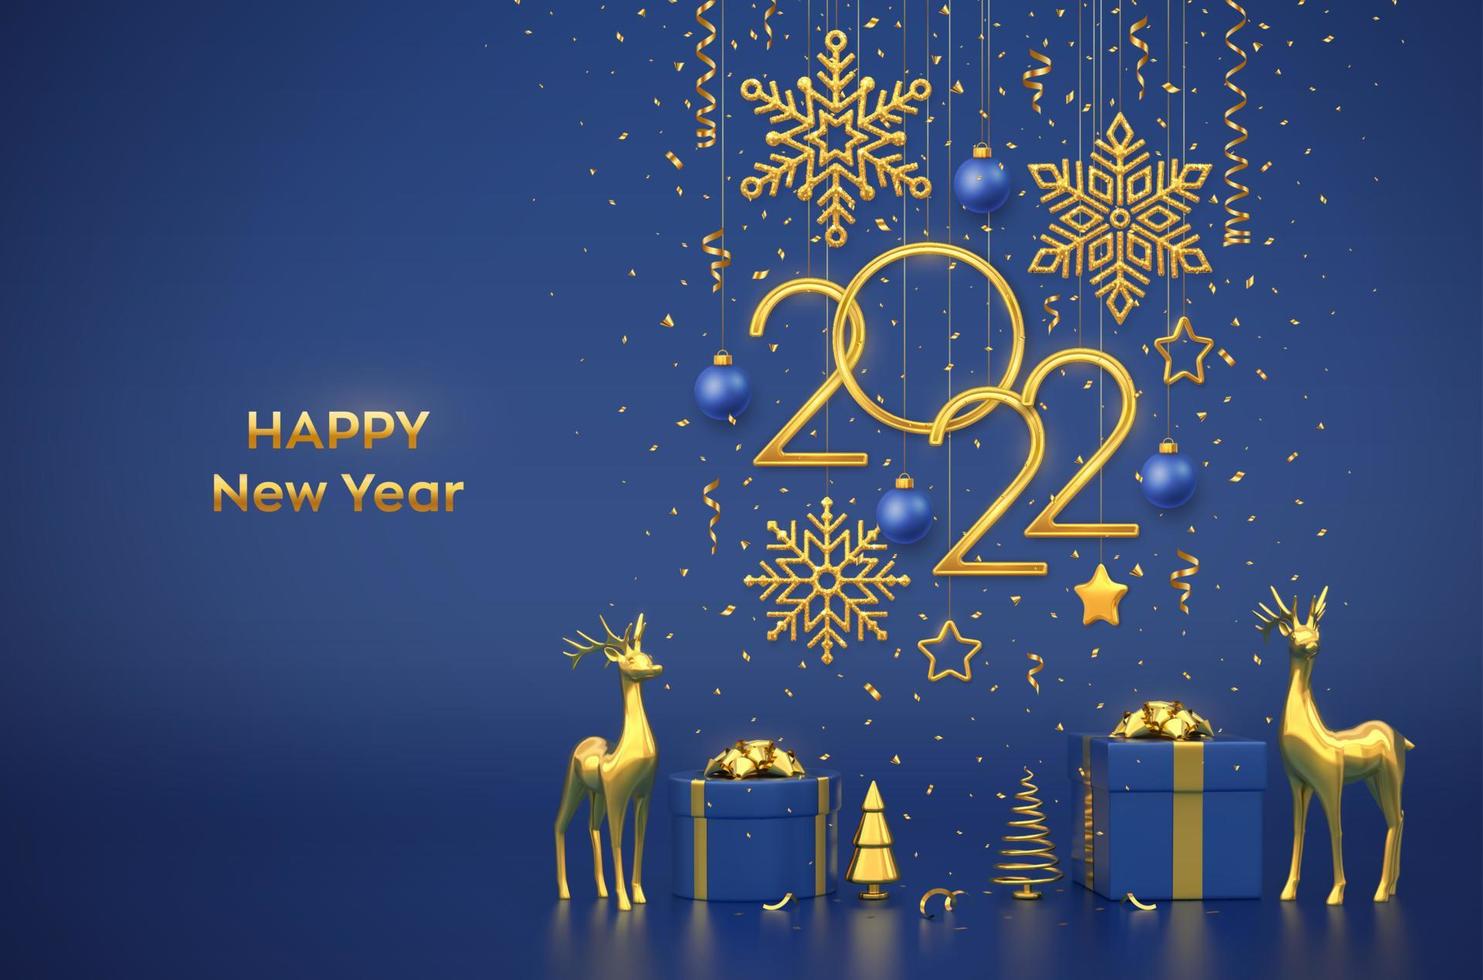 Frohes neues 2022 Jahr. hängende goldene metallische Zahlen 2022 mit Schneeflocken, Sternen und Kugeln auf blauem Hintergrund. Geschenkboxen, Hirsche, goldmetallische Kiefer oder Tanne, kegelförmige Fichten. Vektor. vektor